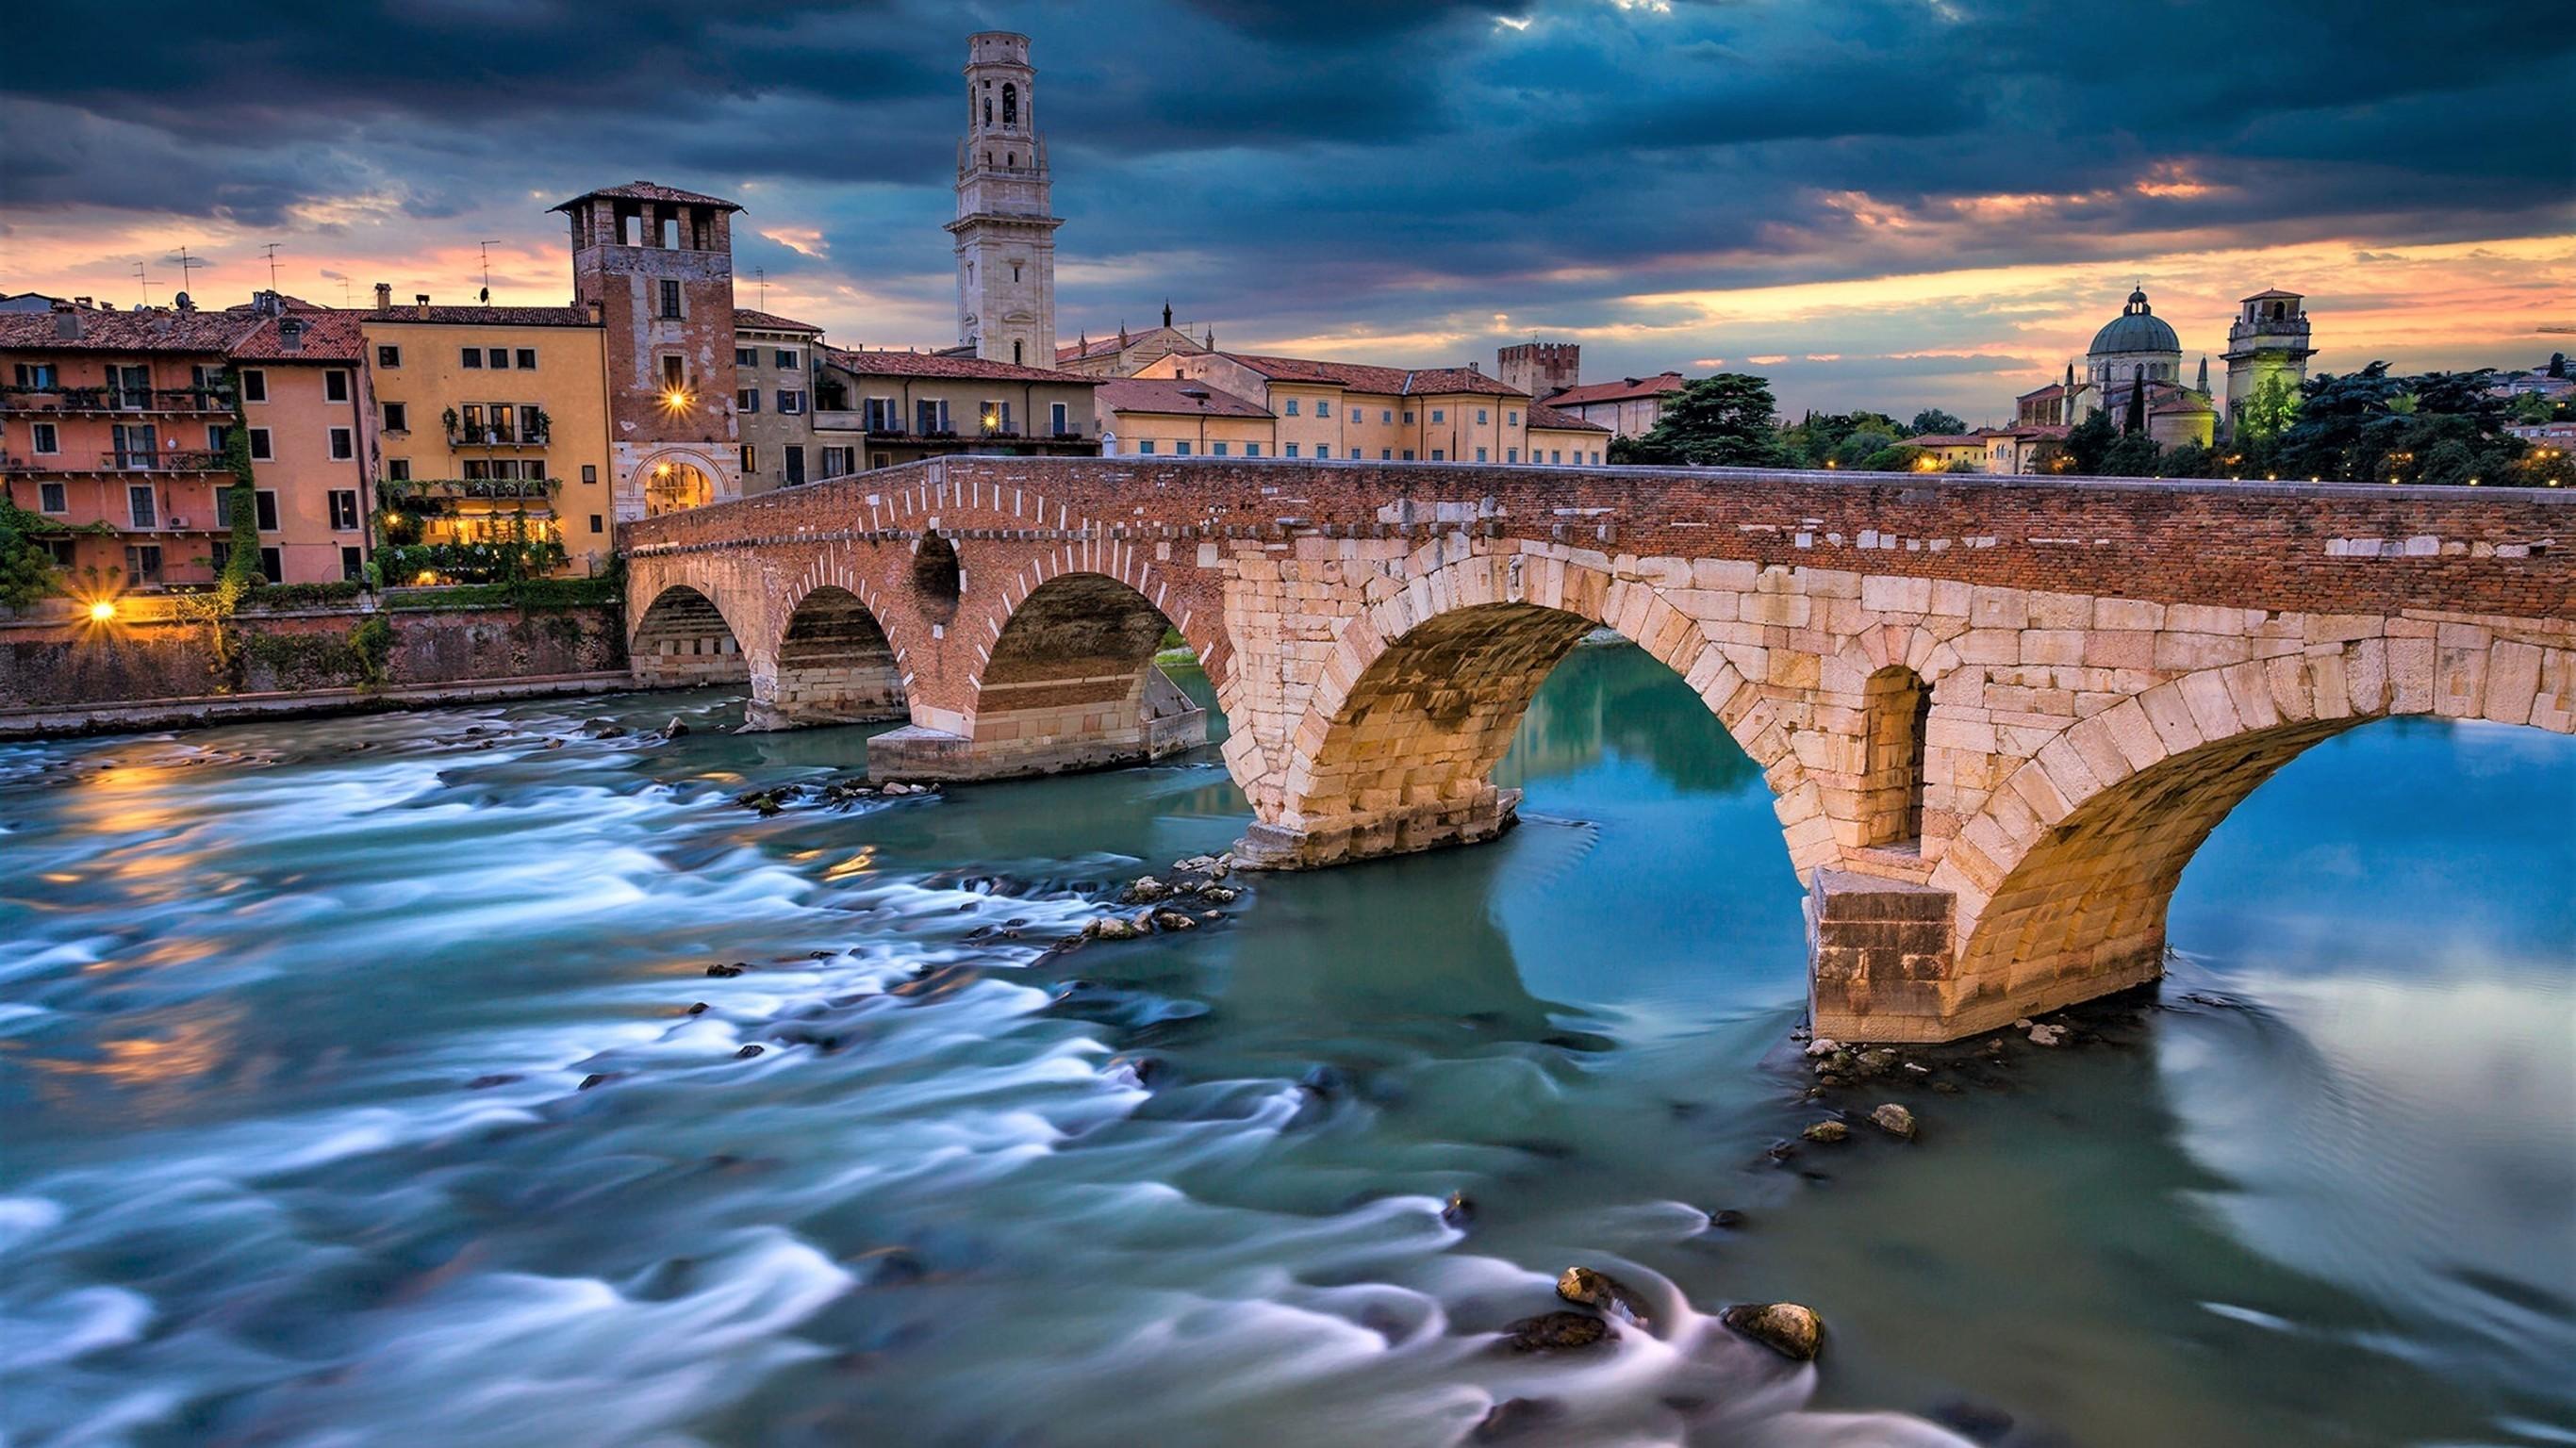 Download 2732x1536 Italy, Verona, Bridge, Dark Clouds, Buildings